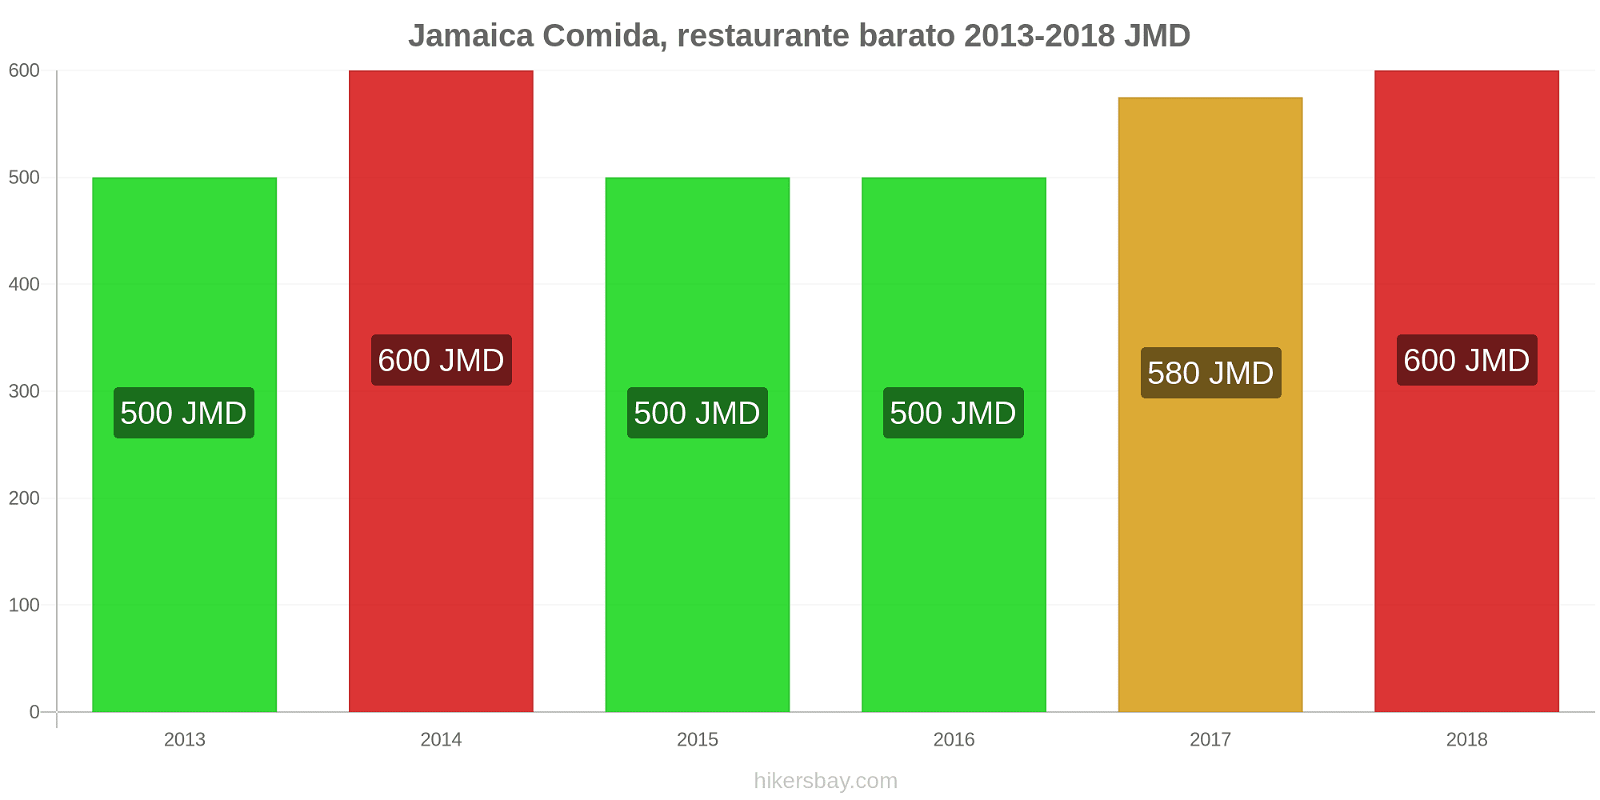 Jamaica cambios de precios Comida en un restaurante económico hikersbay.com